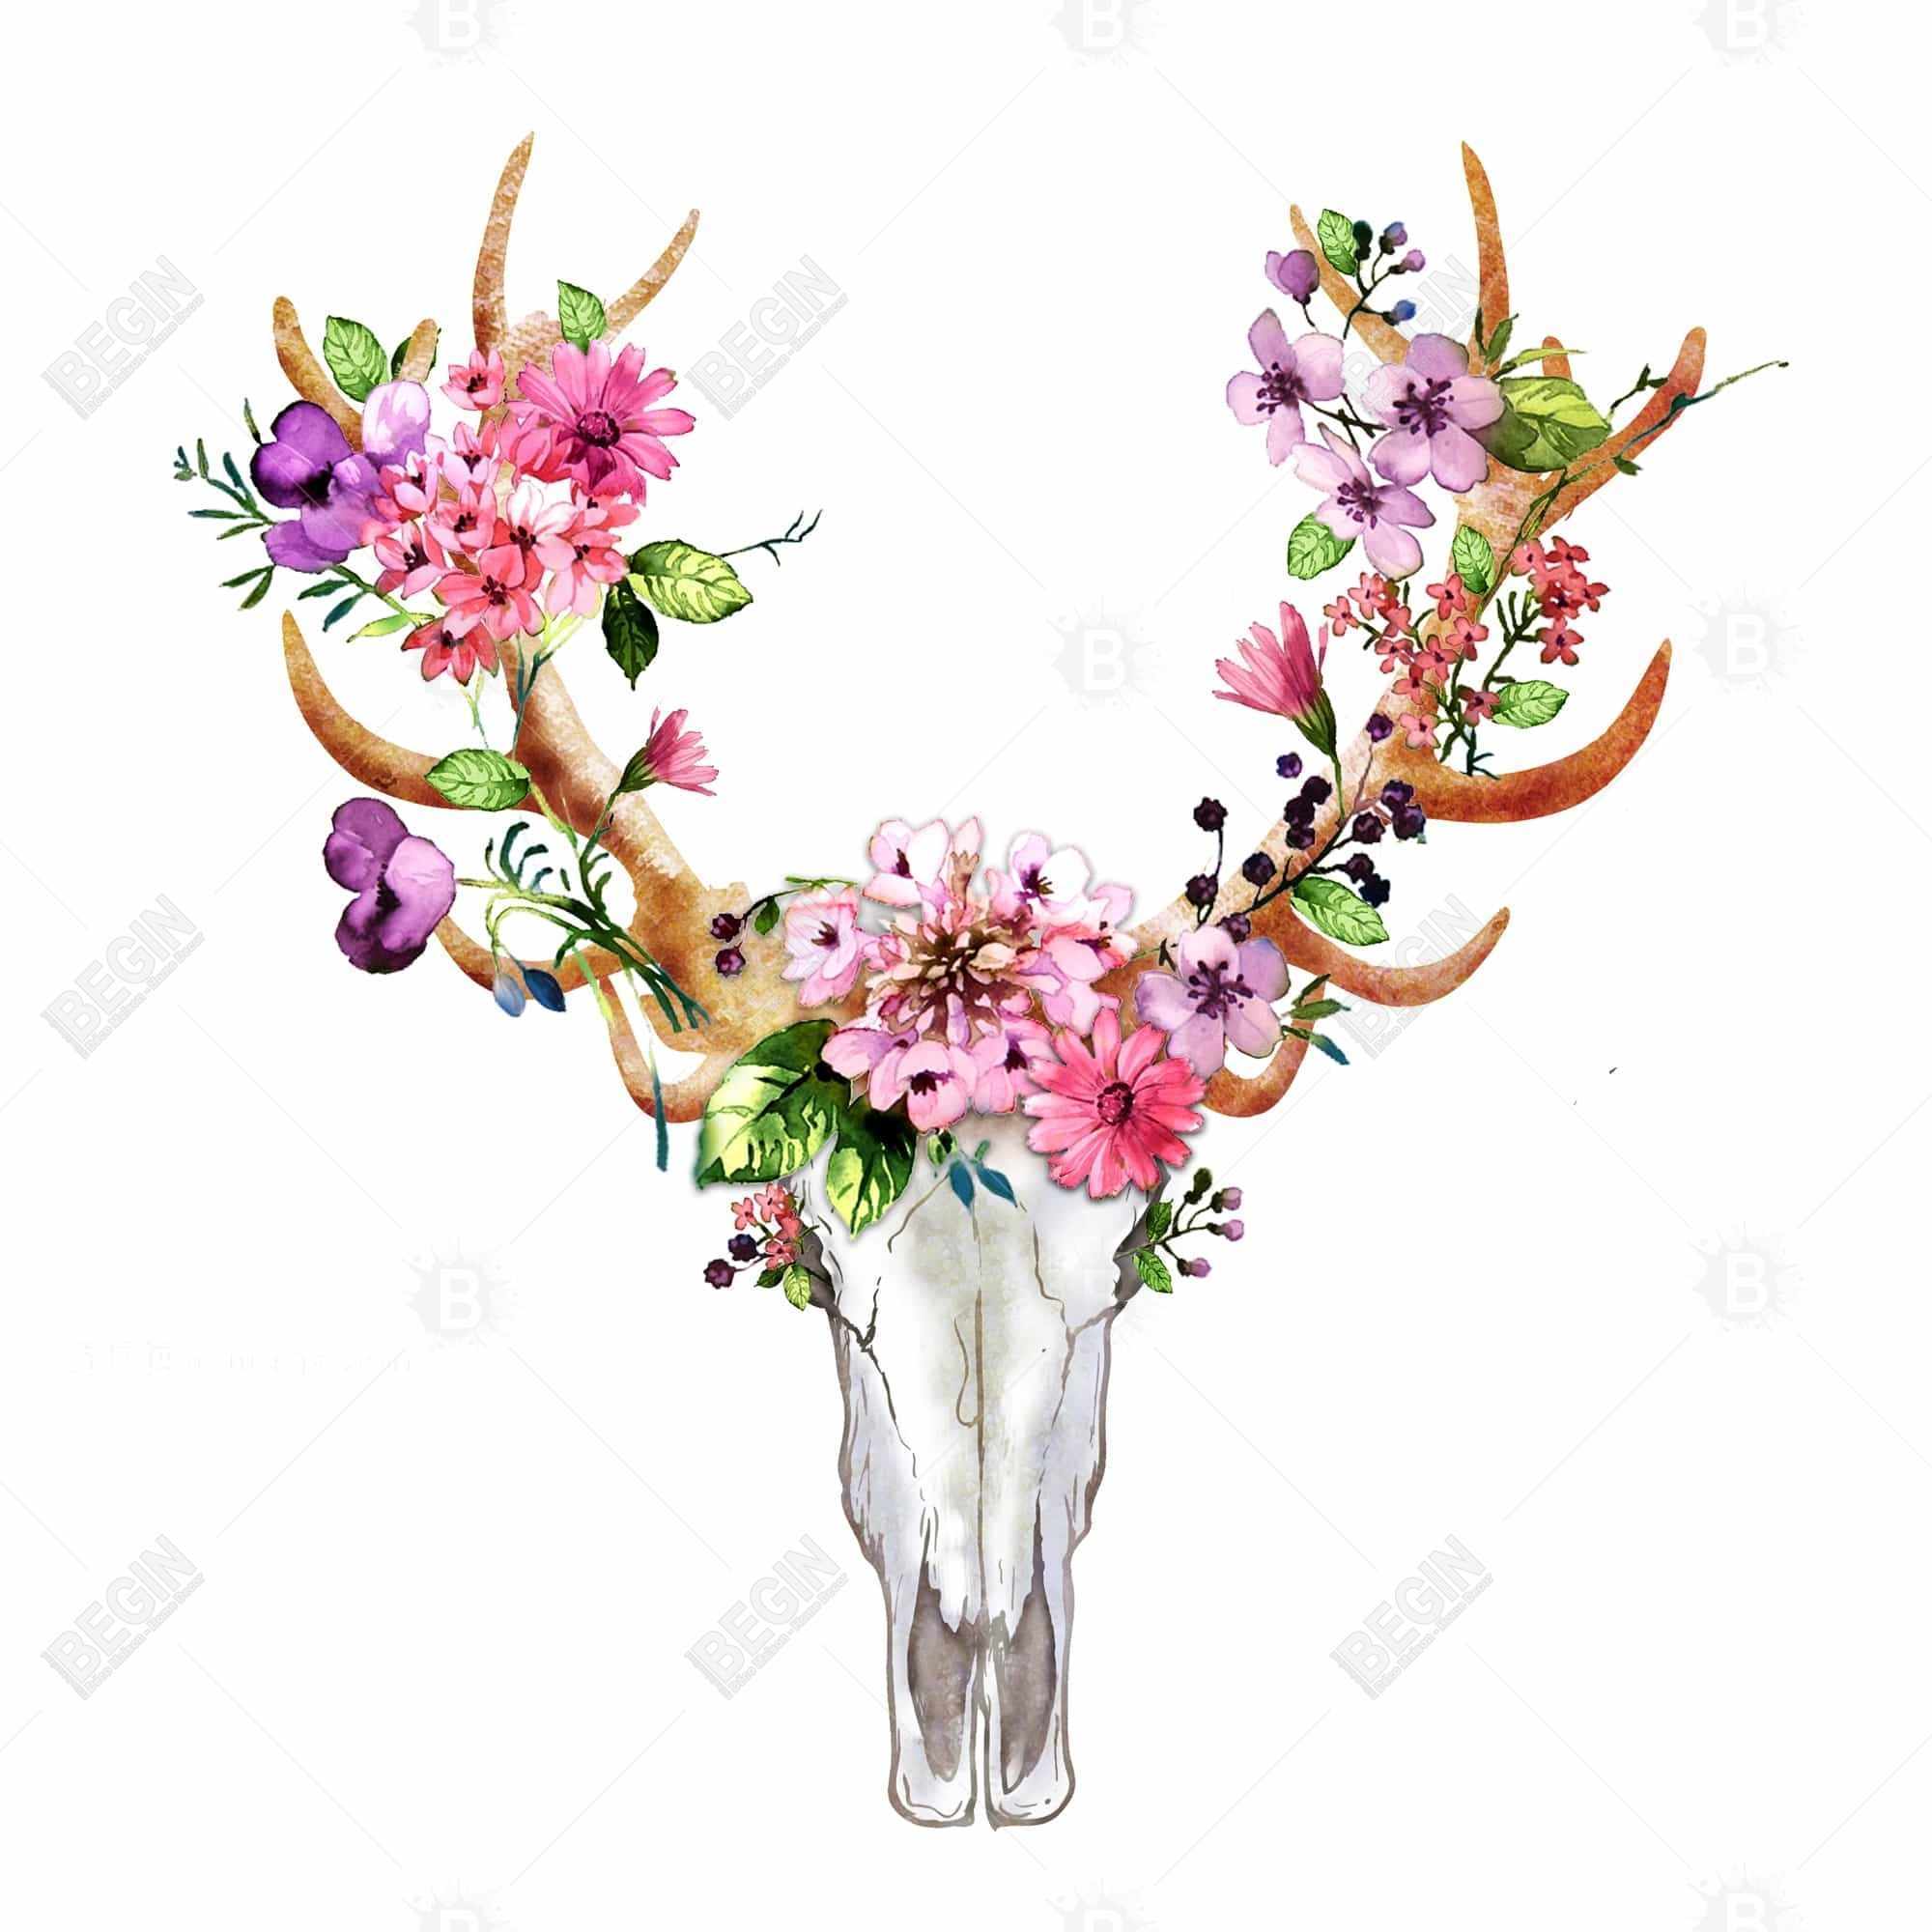 Rustic deer skull with flowers